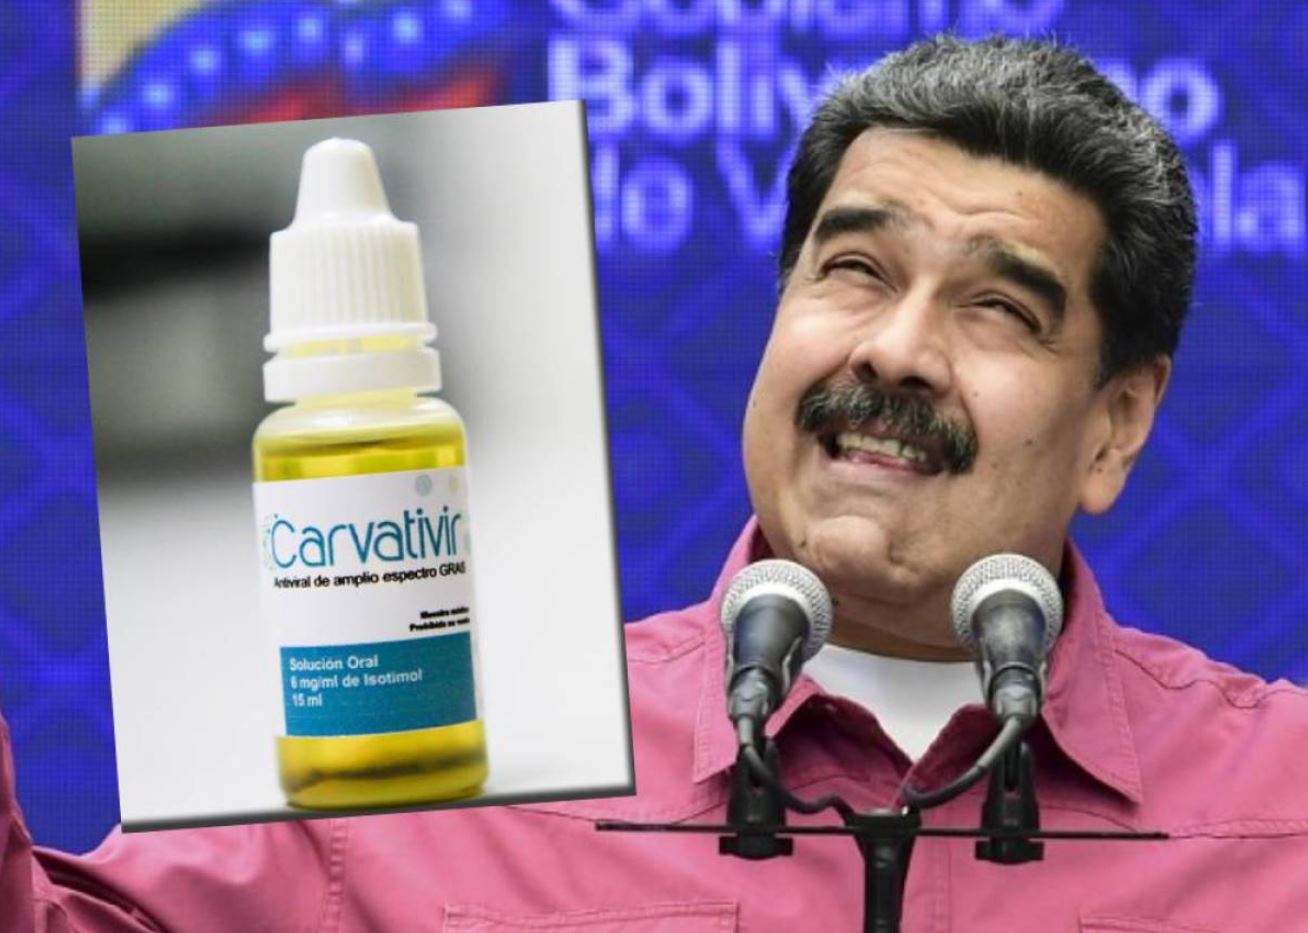 Nicolás Maduro es uno de los grandes difusores de fake news a nivel mundial según Facebook